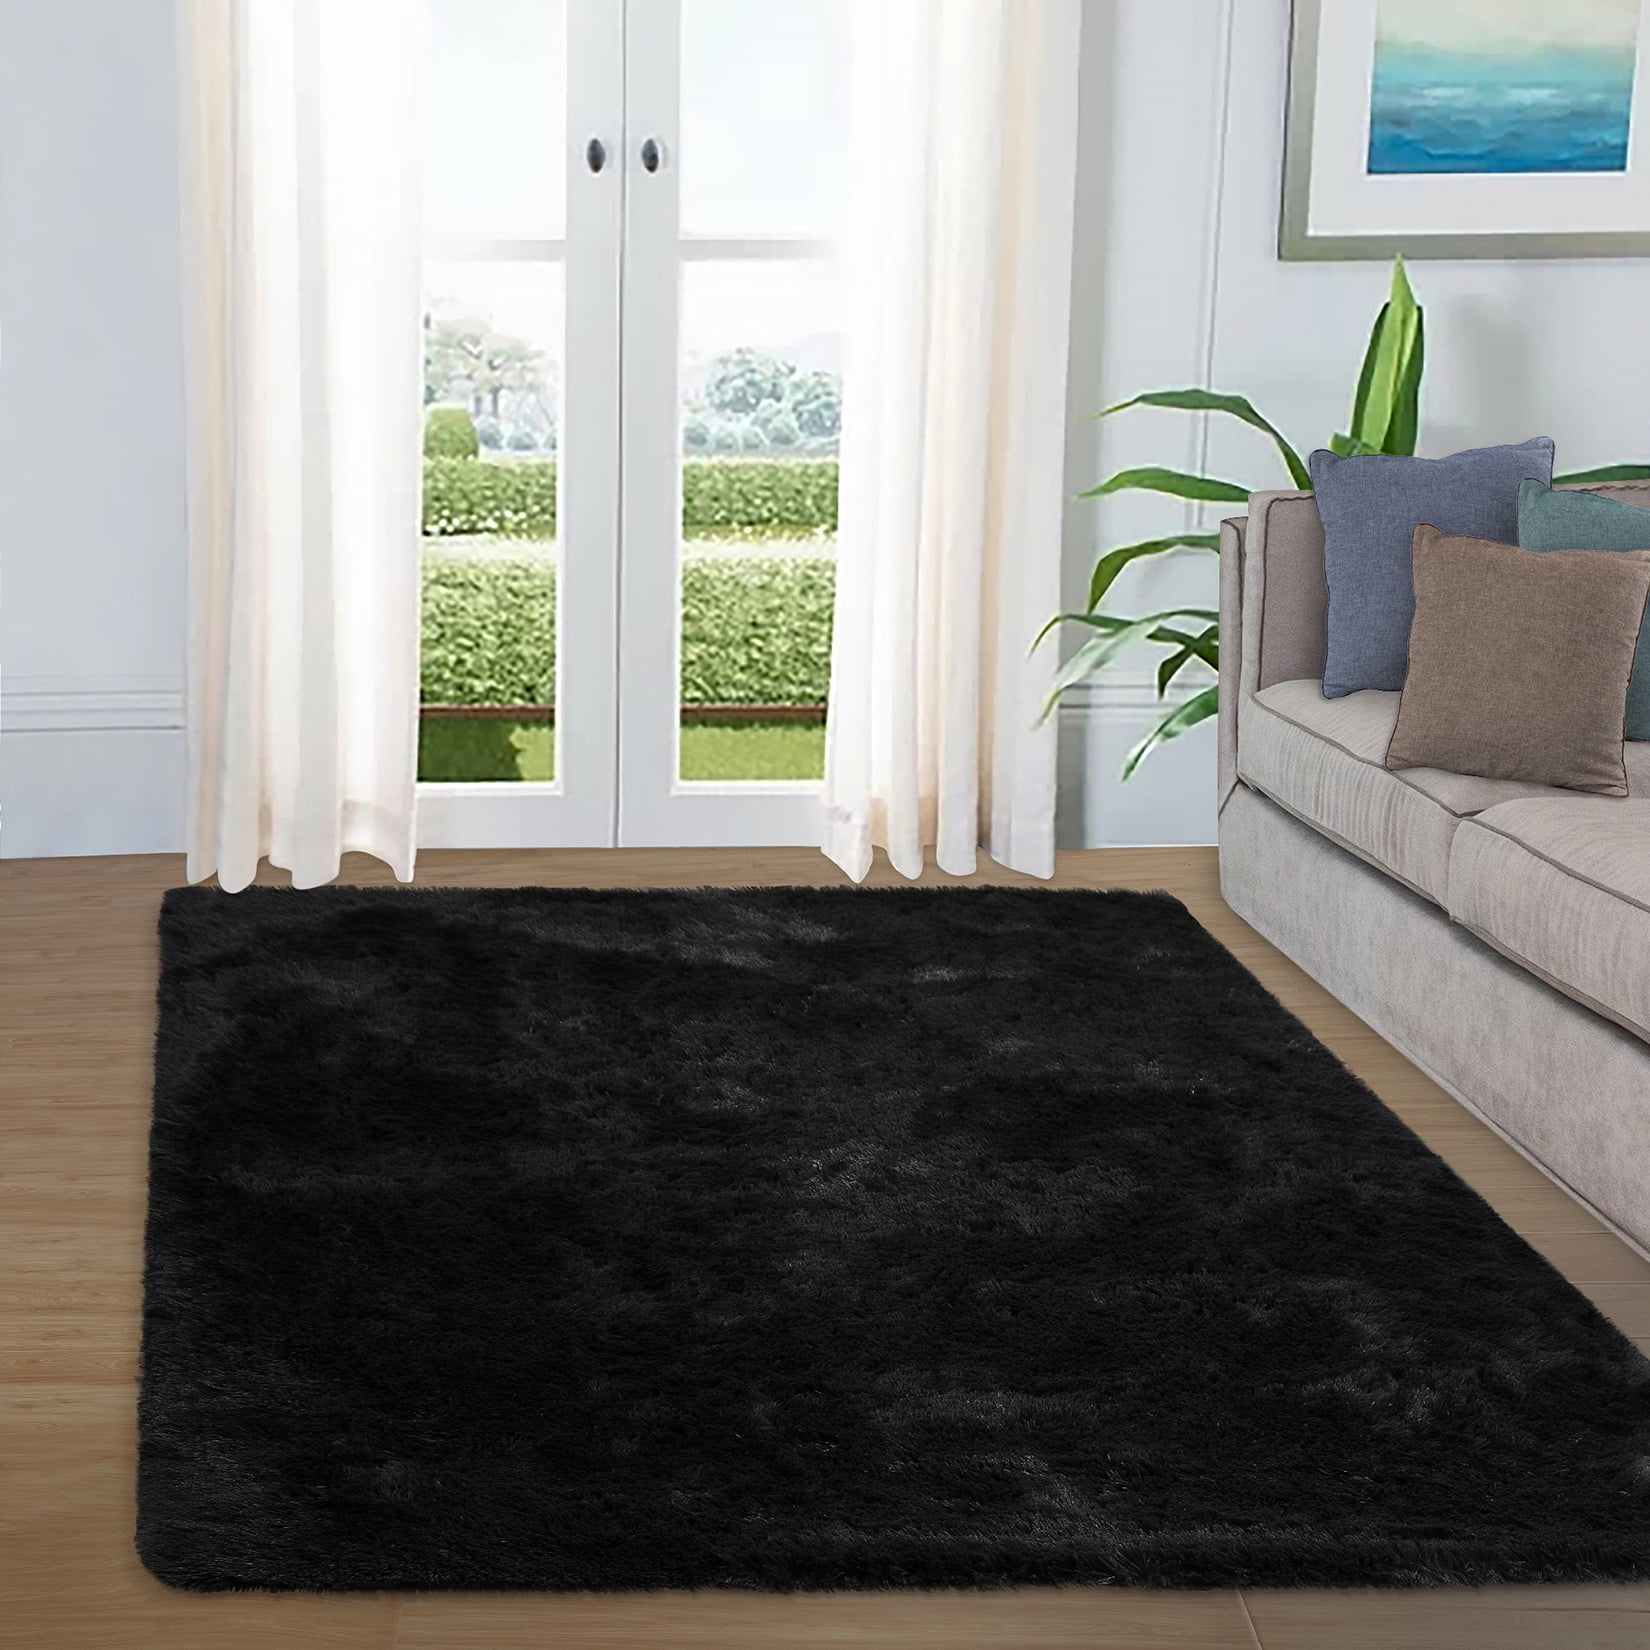 Details about   Fluffy Rug Living Room Faux Fur Bedroom Shaggy Rug Super Soft Carpet Floor Mat! 